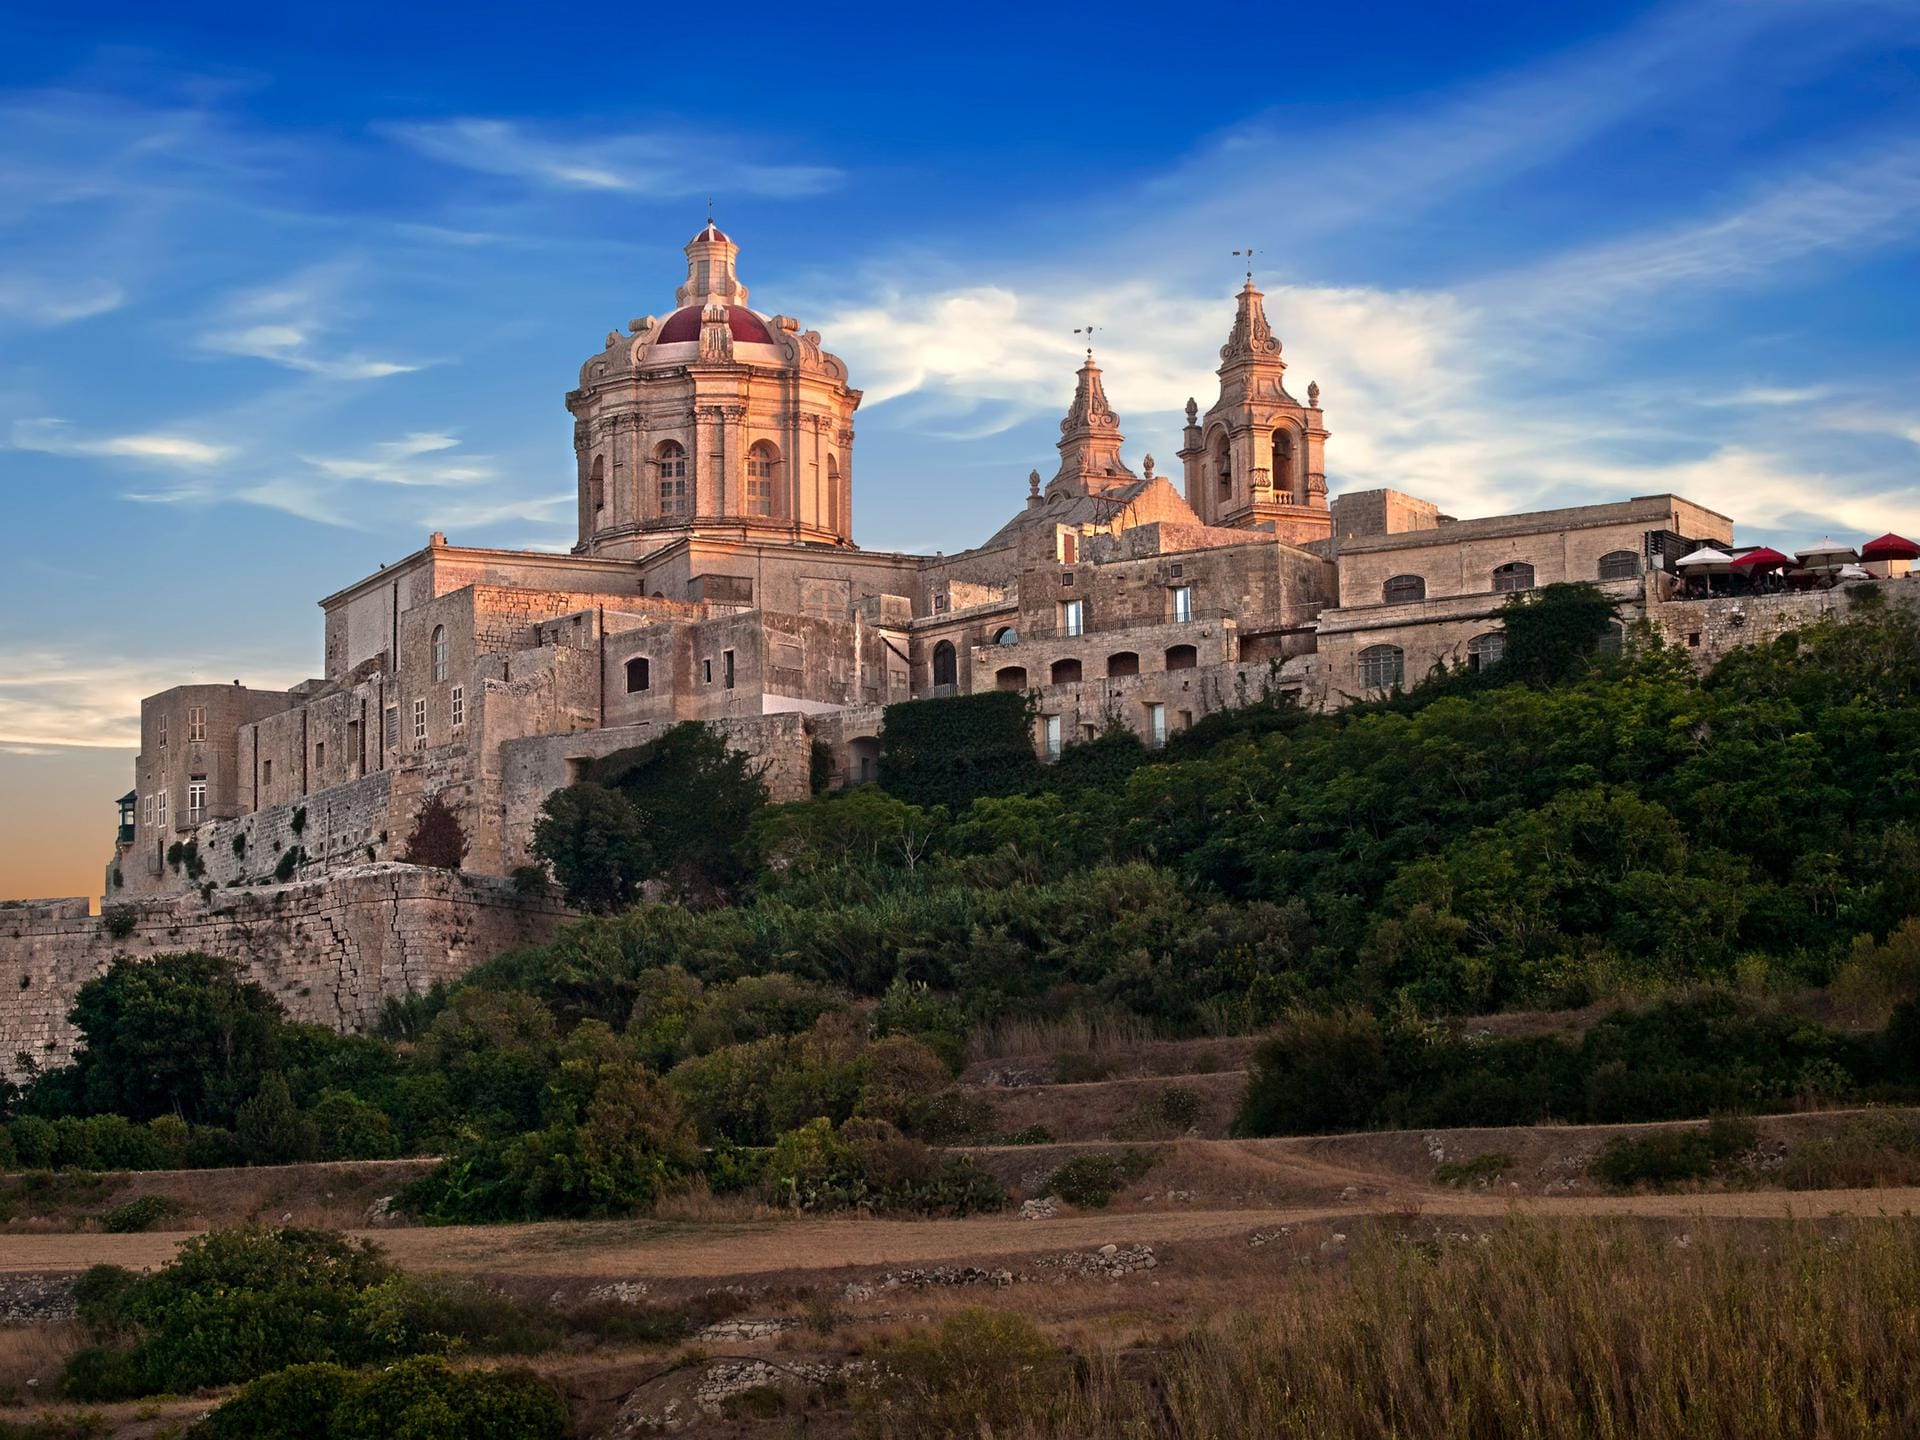 Hoch oben auf einem Plateau thront die alte Hauptstadt Maltas: Mdina bietet einen grandiosen Ausblick.